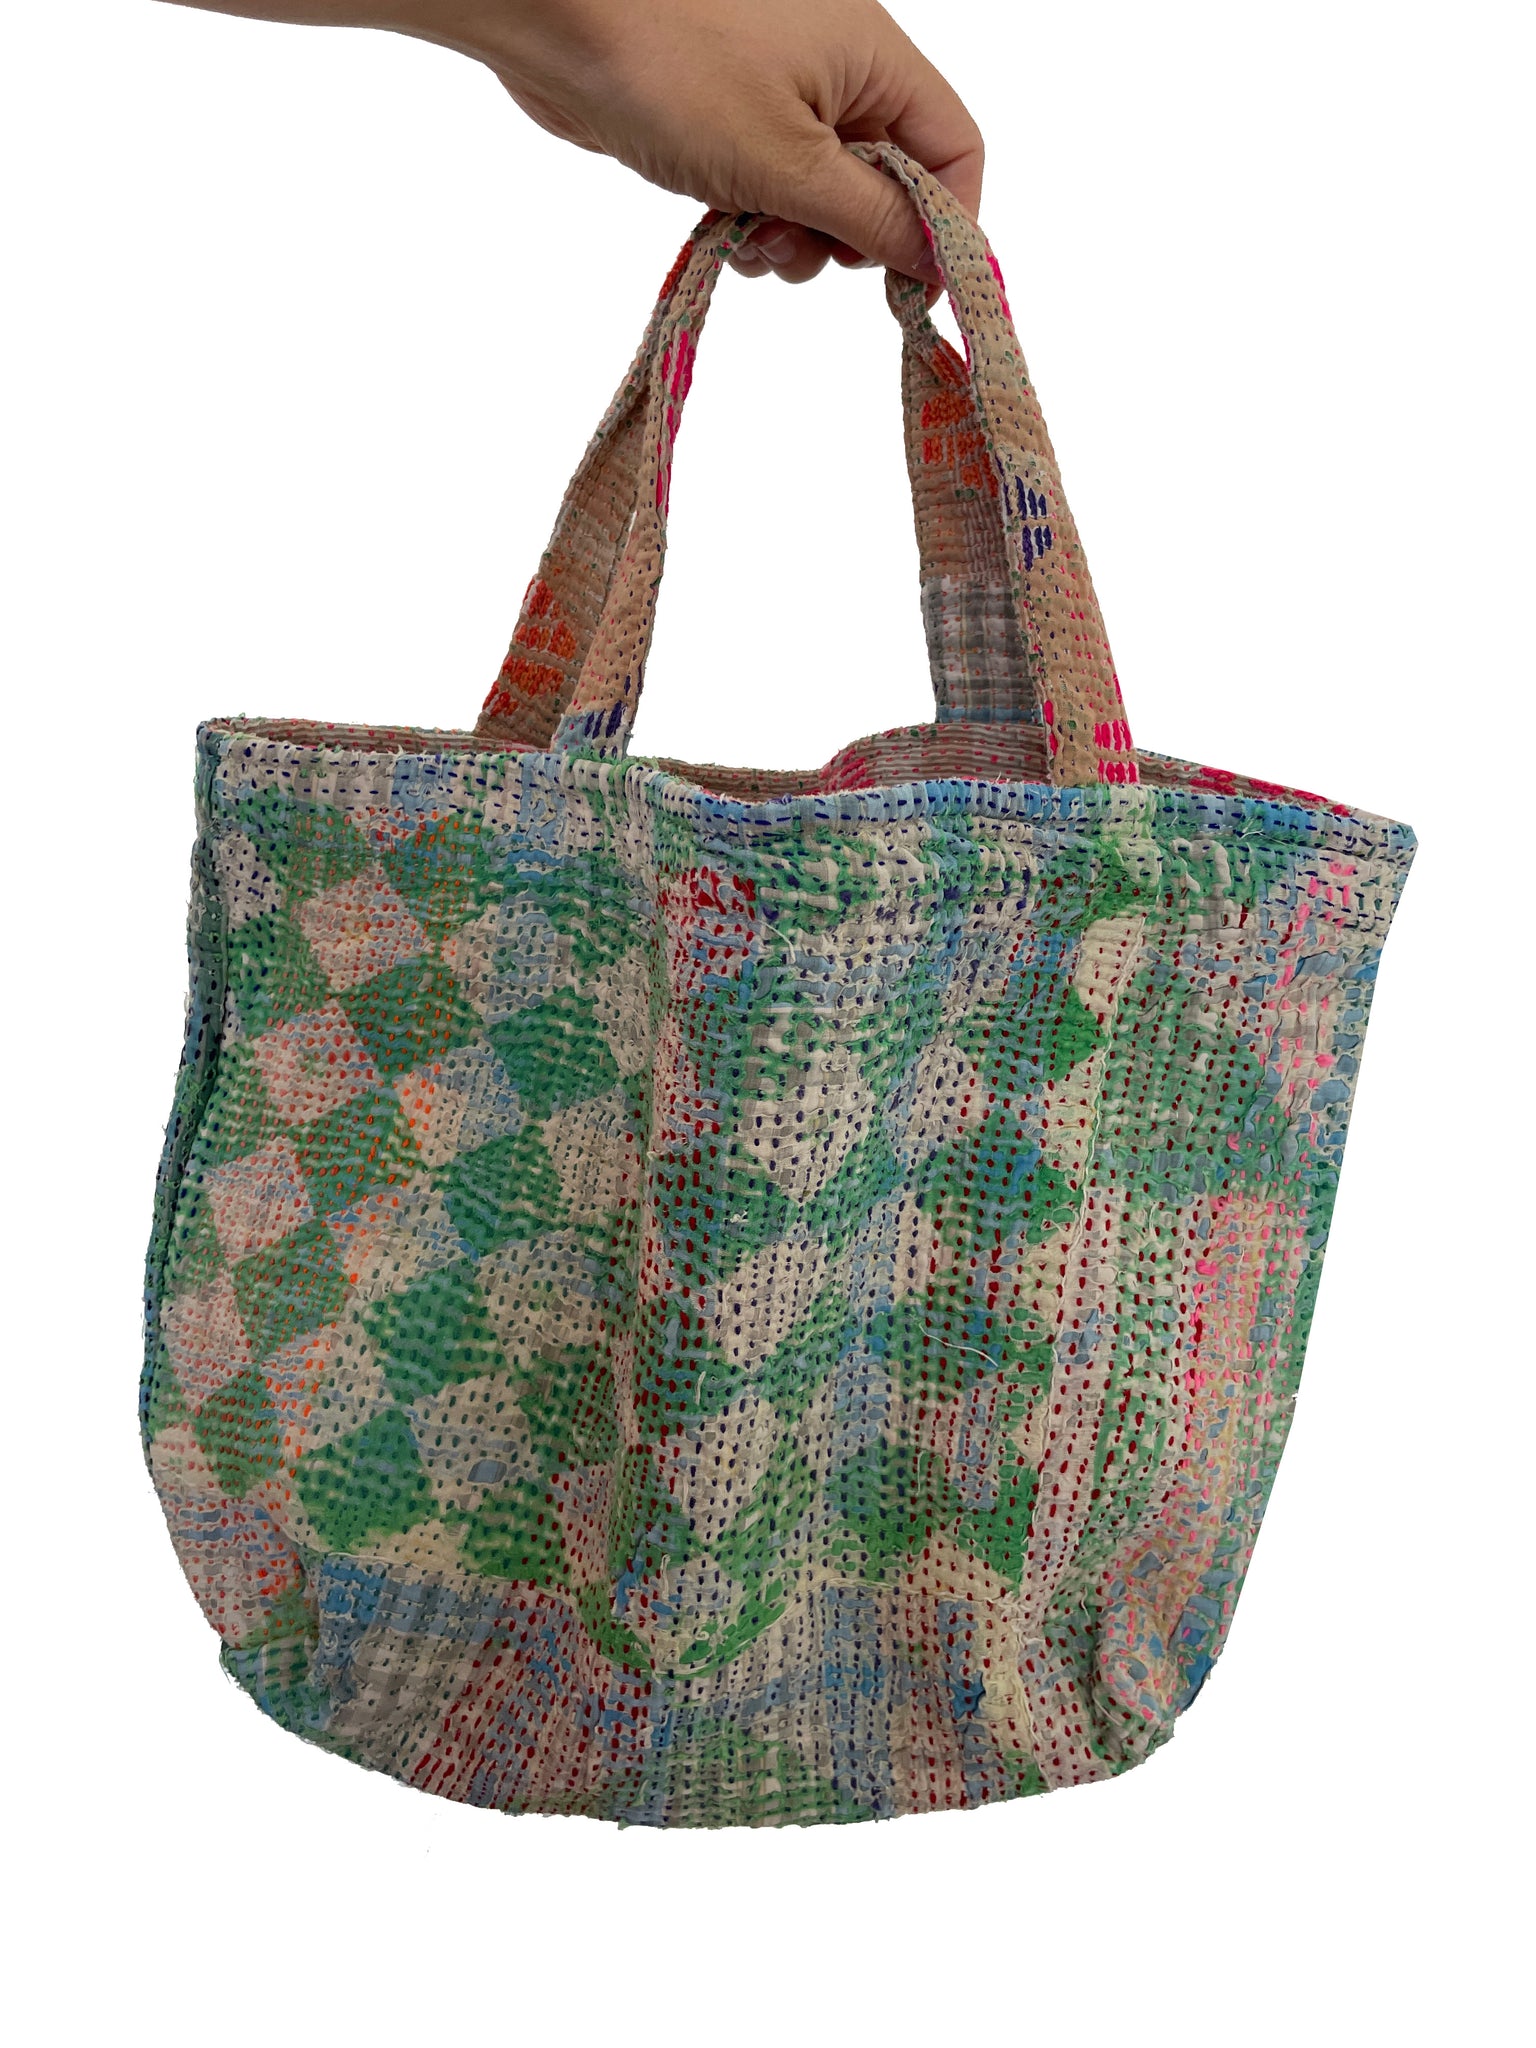 Kantha bag, by MiiThaaii